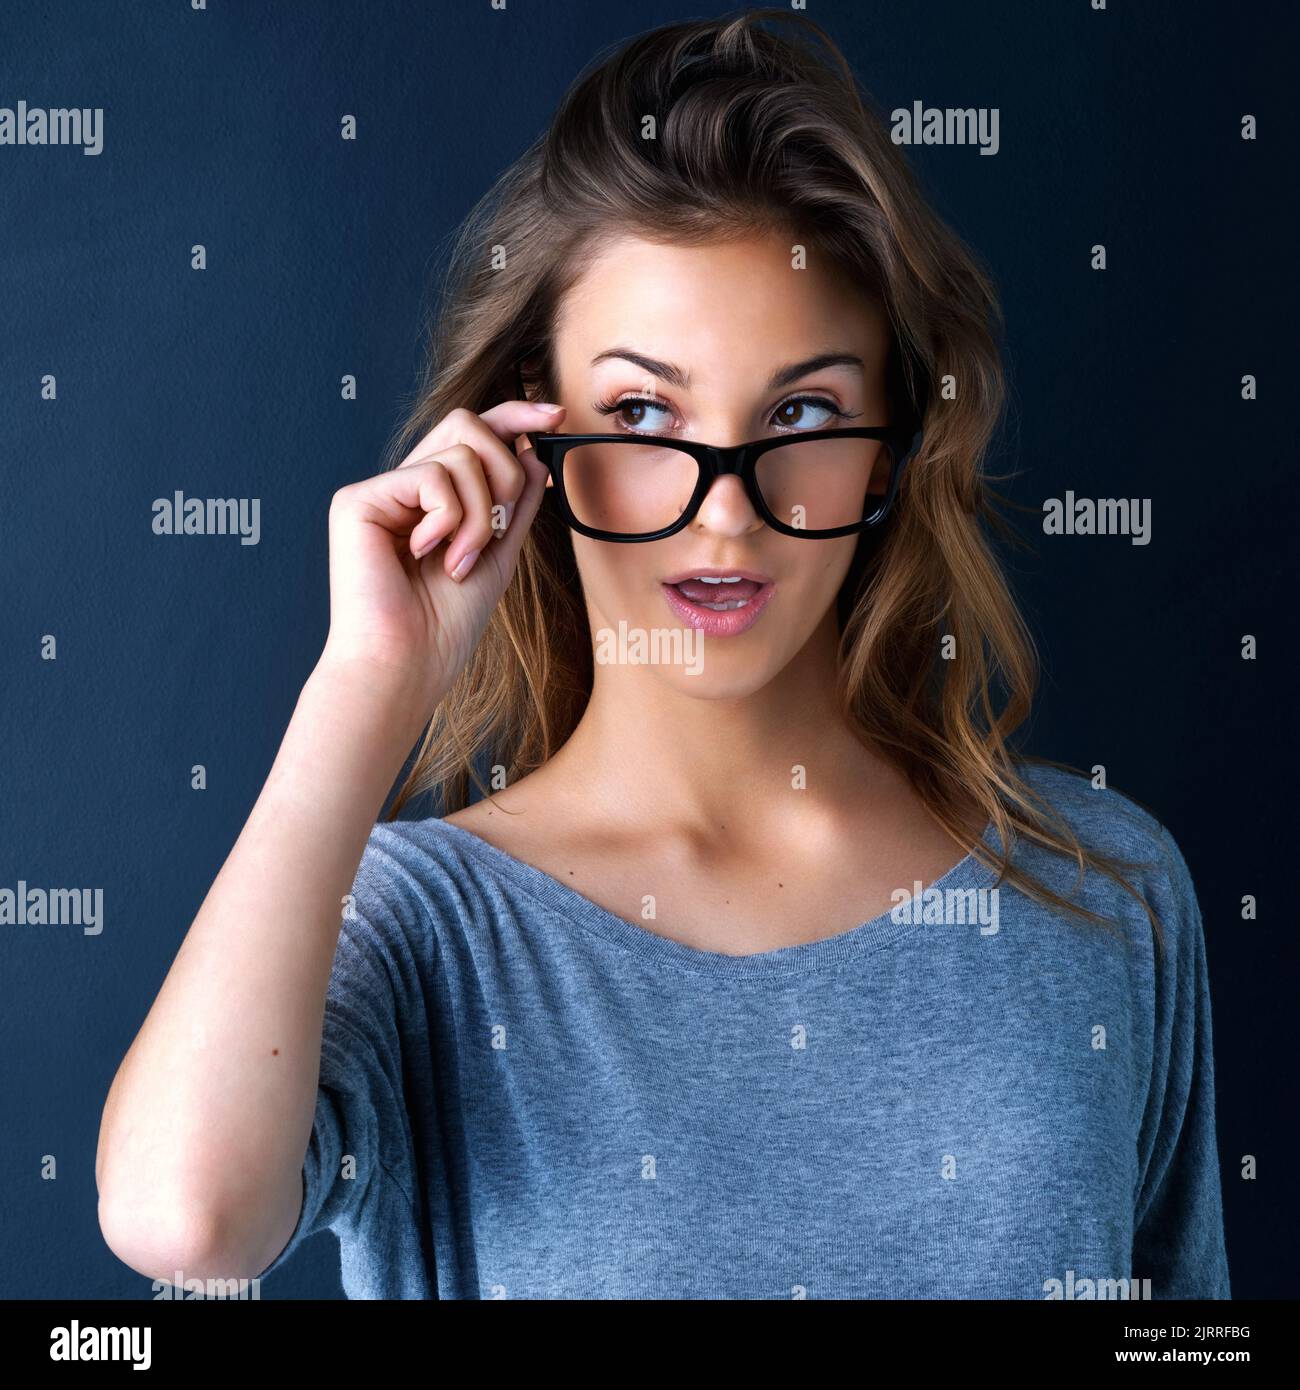 È questo che penso sia. Studio shot di una ragazza adolescente carina in occhiali che alzano le sopracciglia a sorpresa posando su uno sfondo scuro. Foto Stock